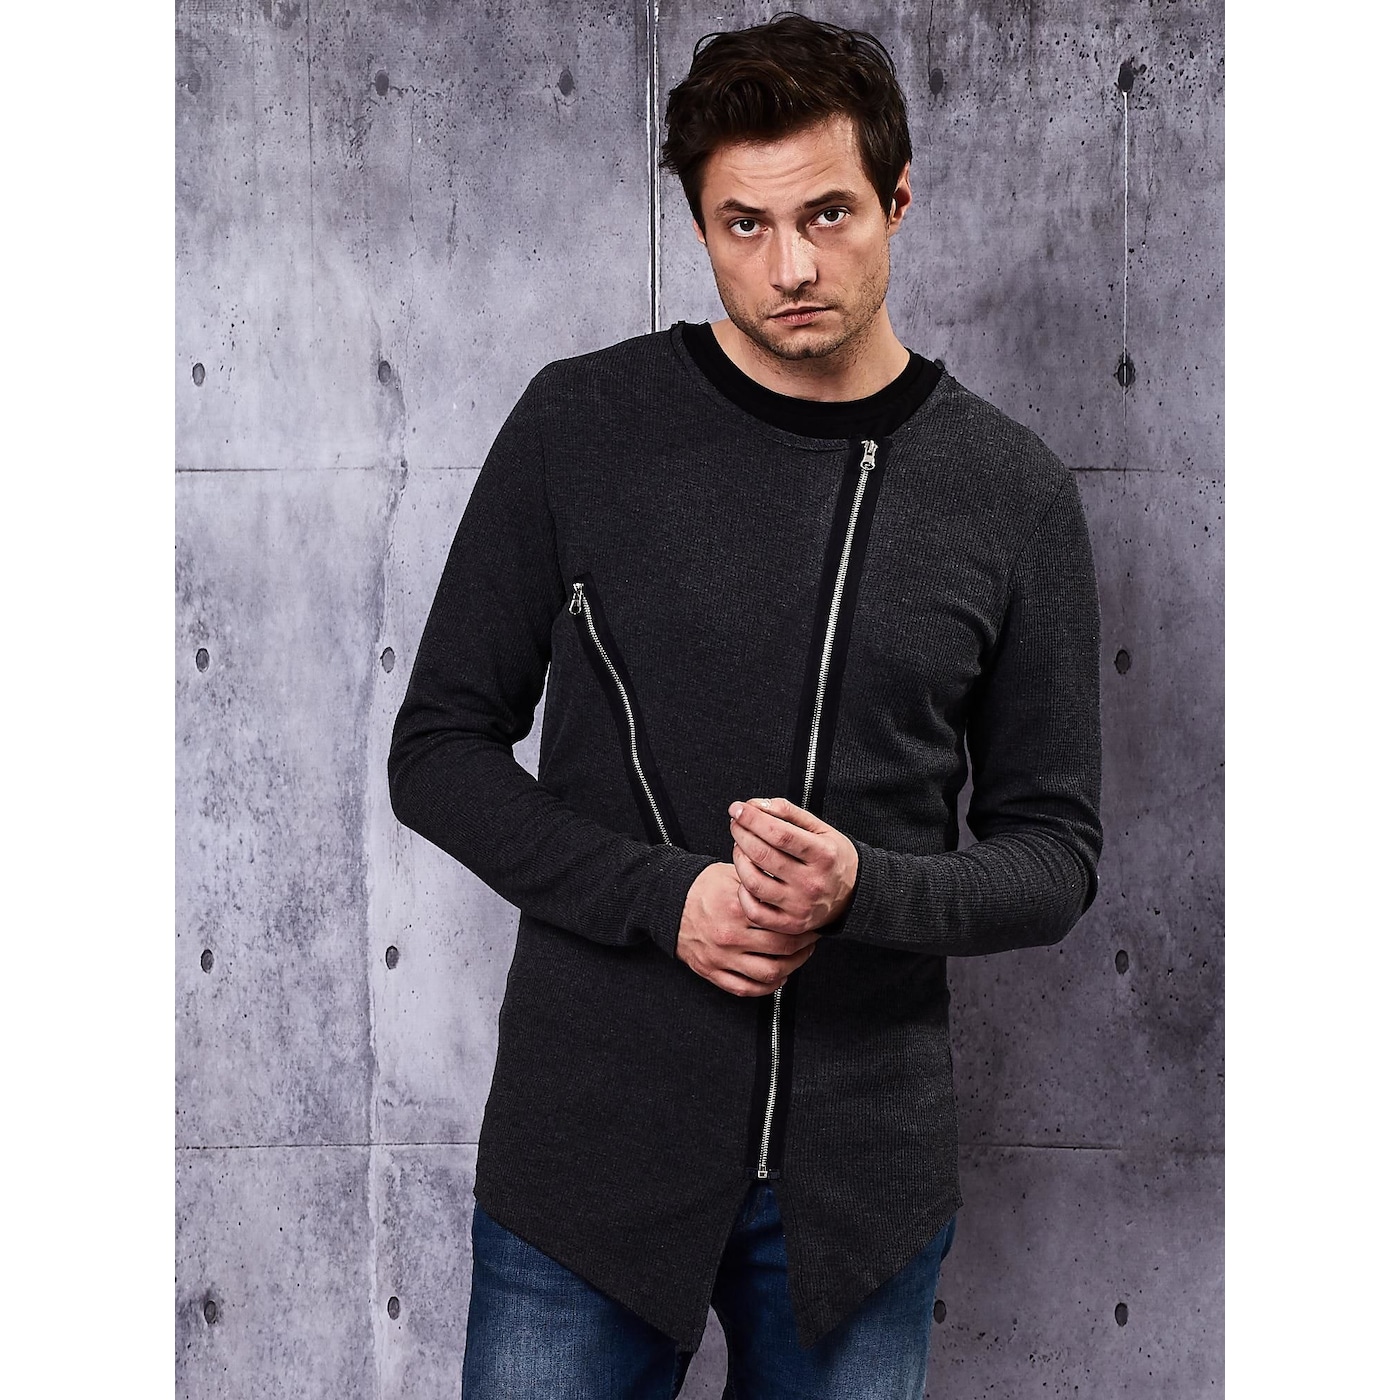 Мъже  Мъжко облекло  Суичъри  Суичъри с цип Dark gray men’s sweatshirt with zippers 1477590-7875406